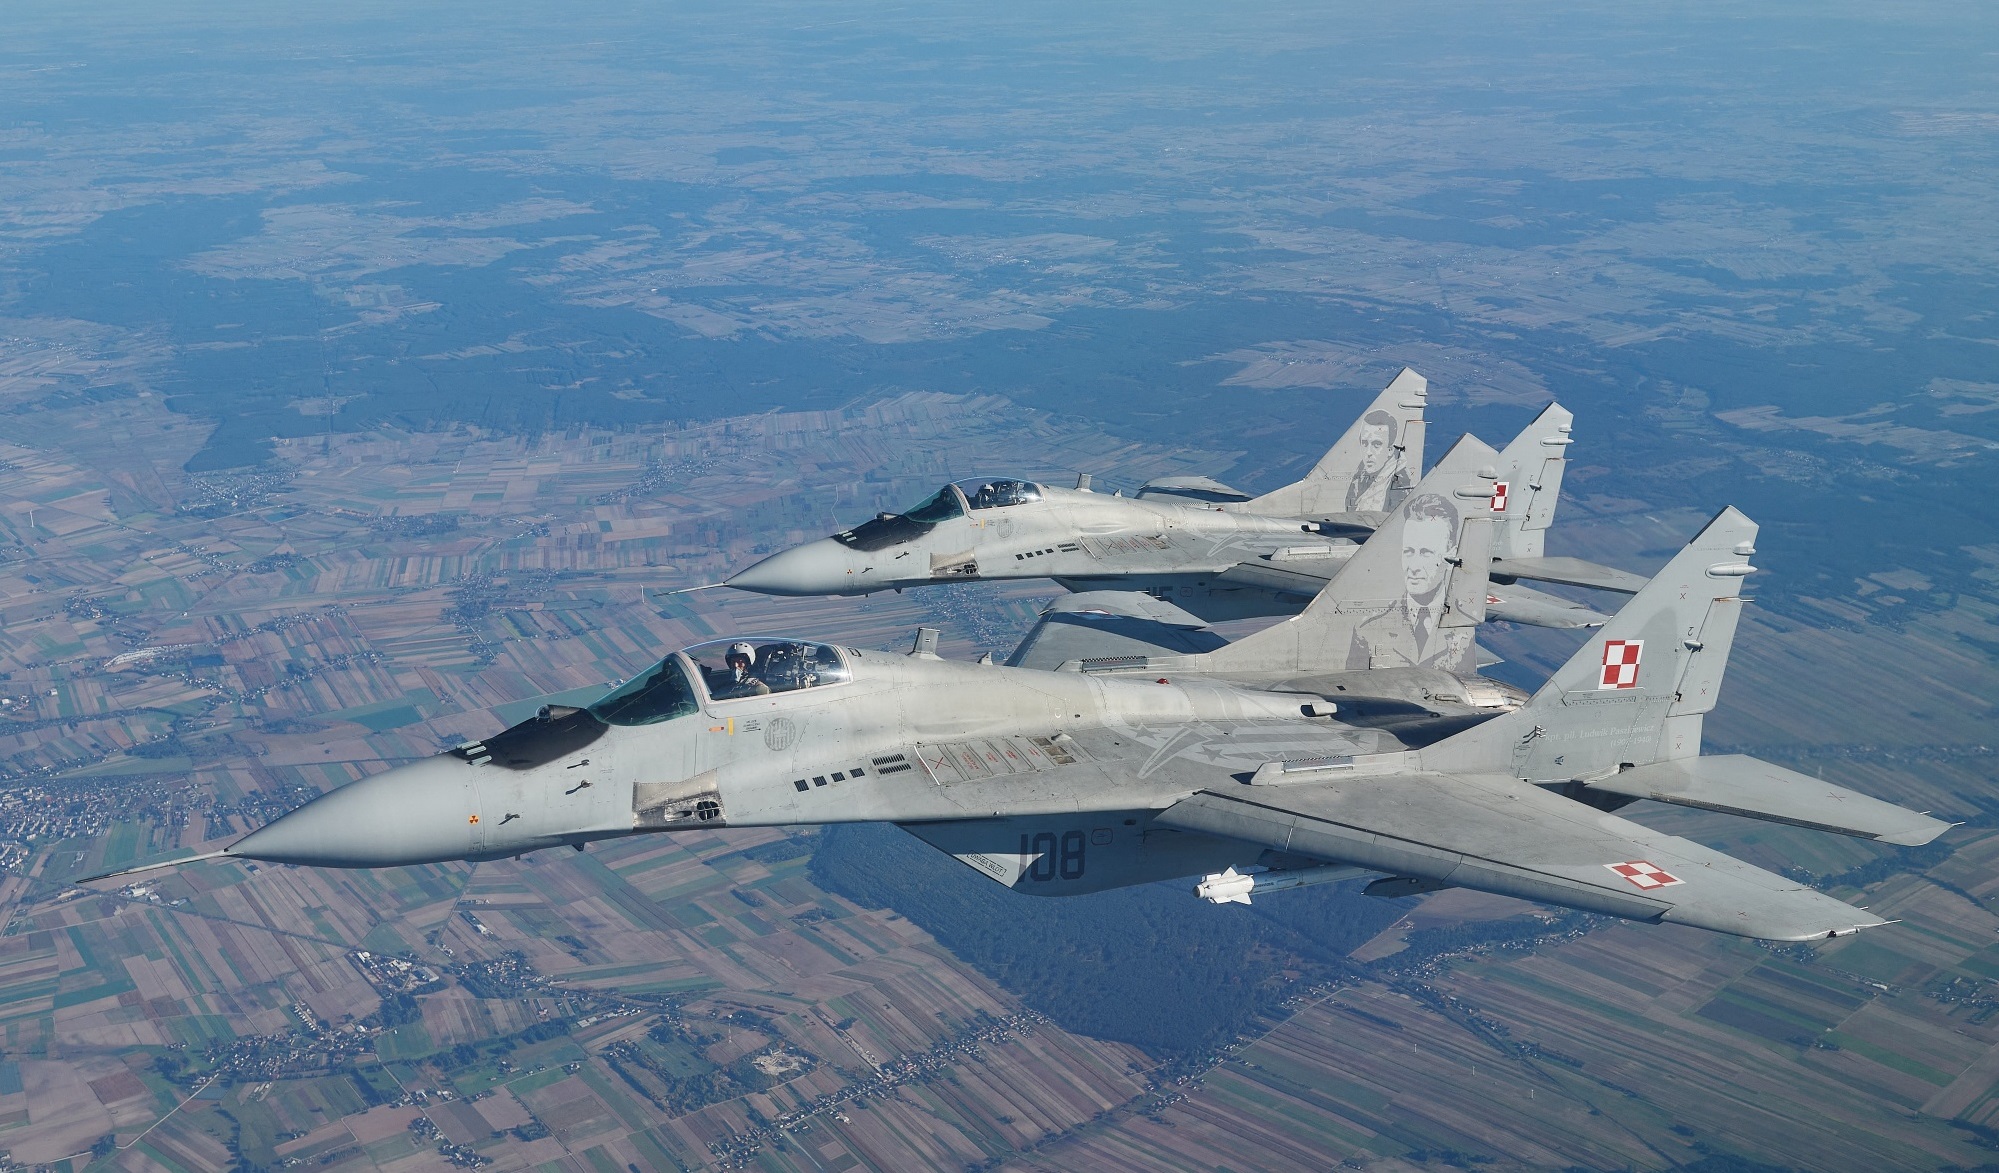 Polonia transfiere a Ucrania 14 cazas polivalentes MiG-29 de la era soviética